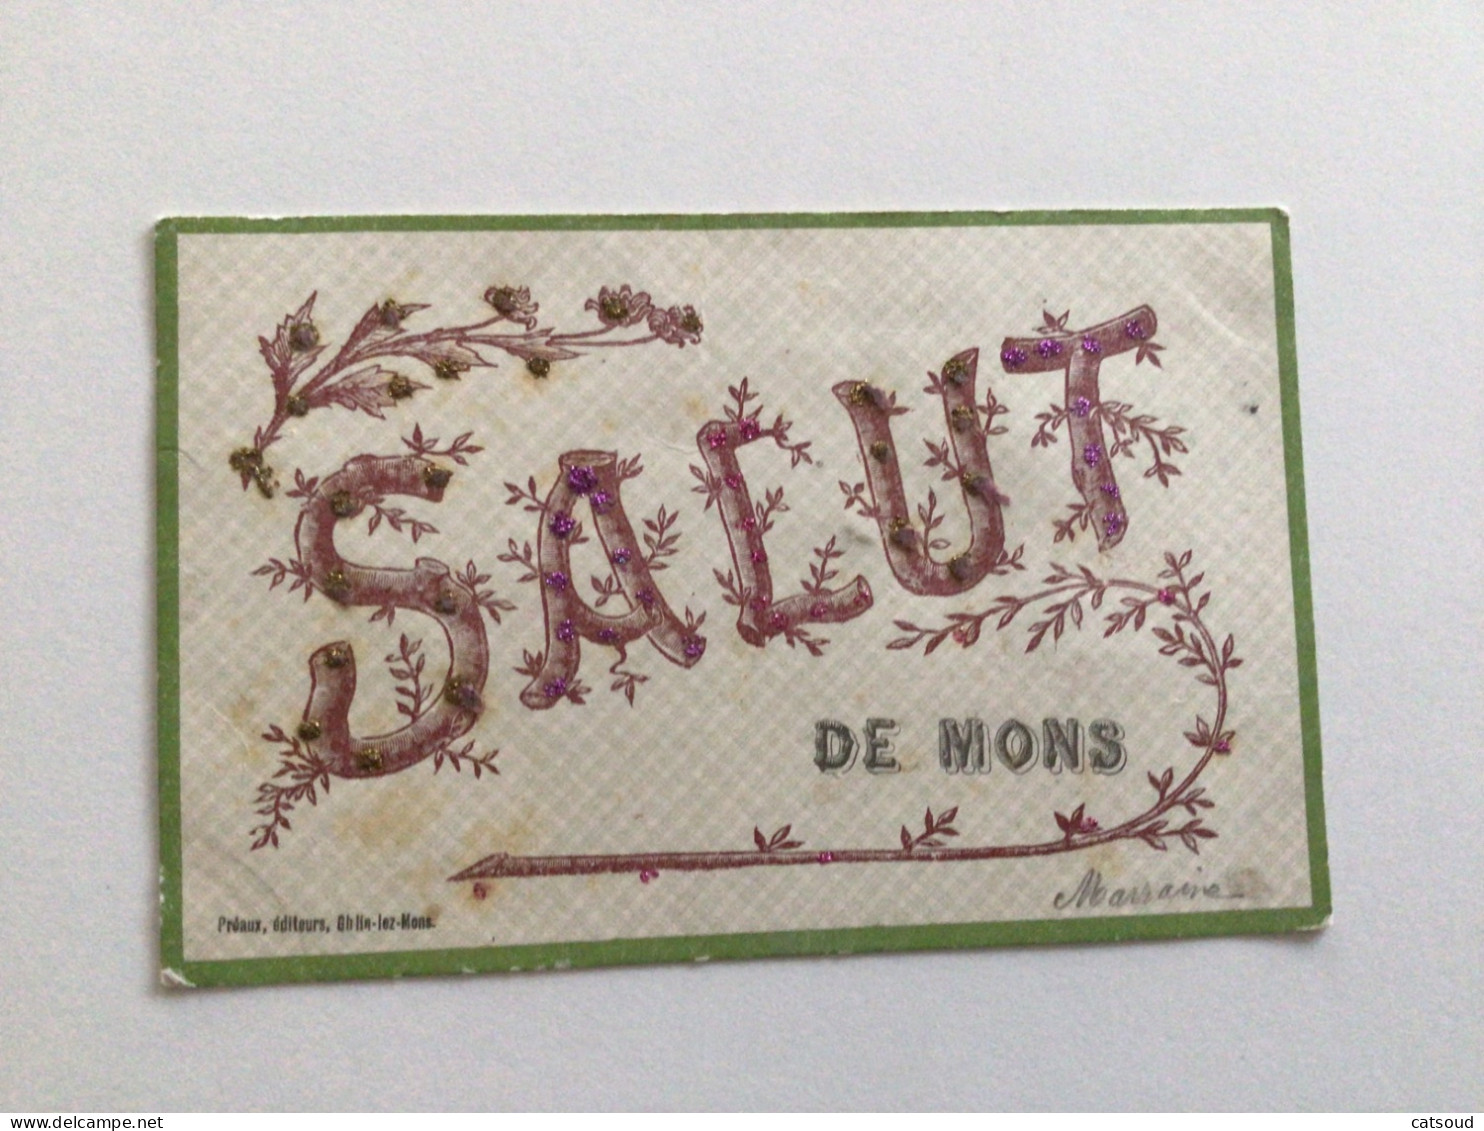 Carte Postale Ancienne (1906) Salut De Mons (avec Paillettes) - Mons